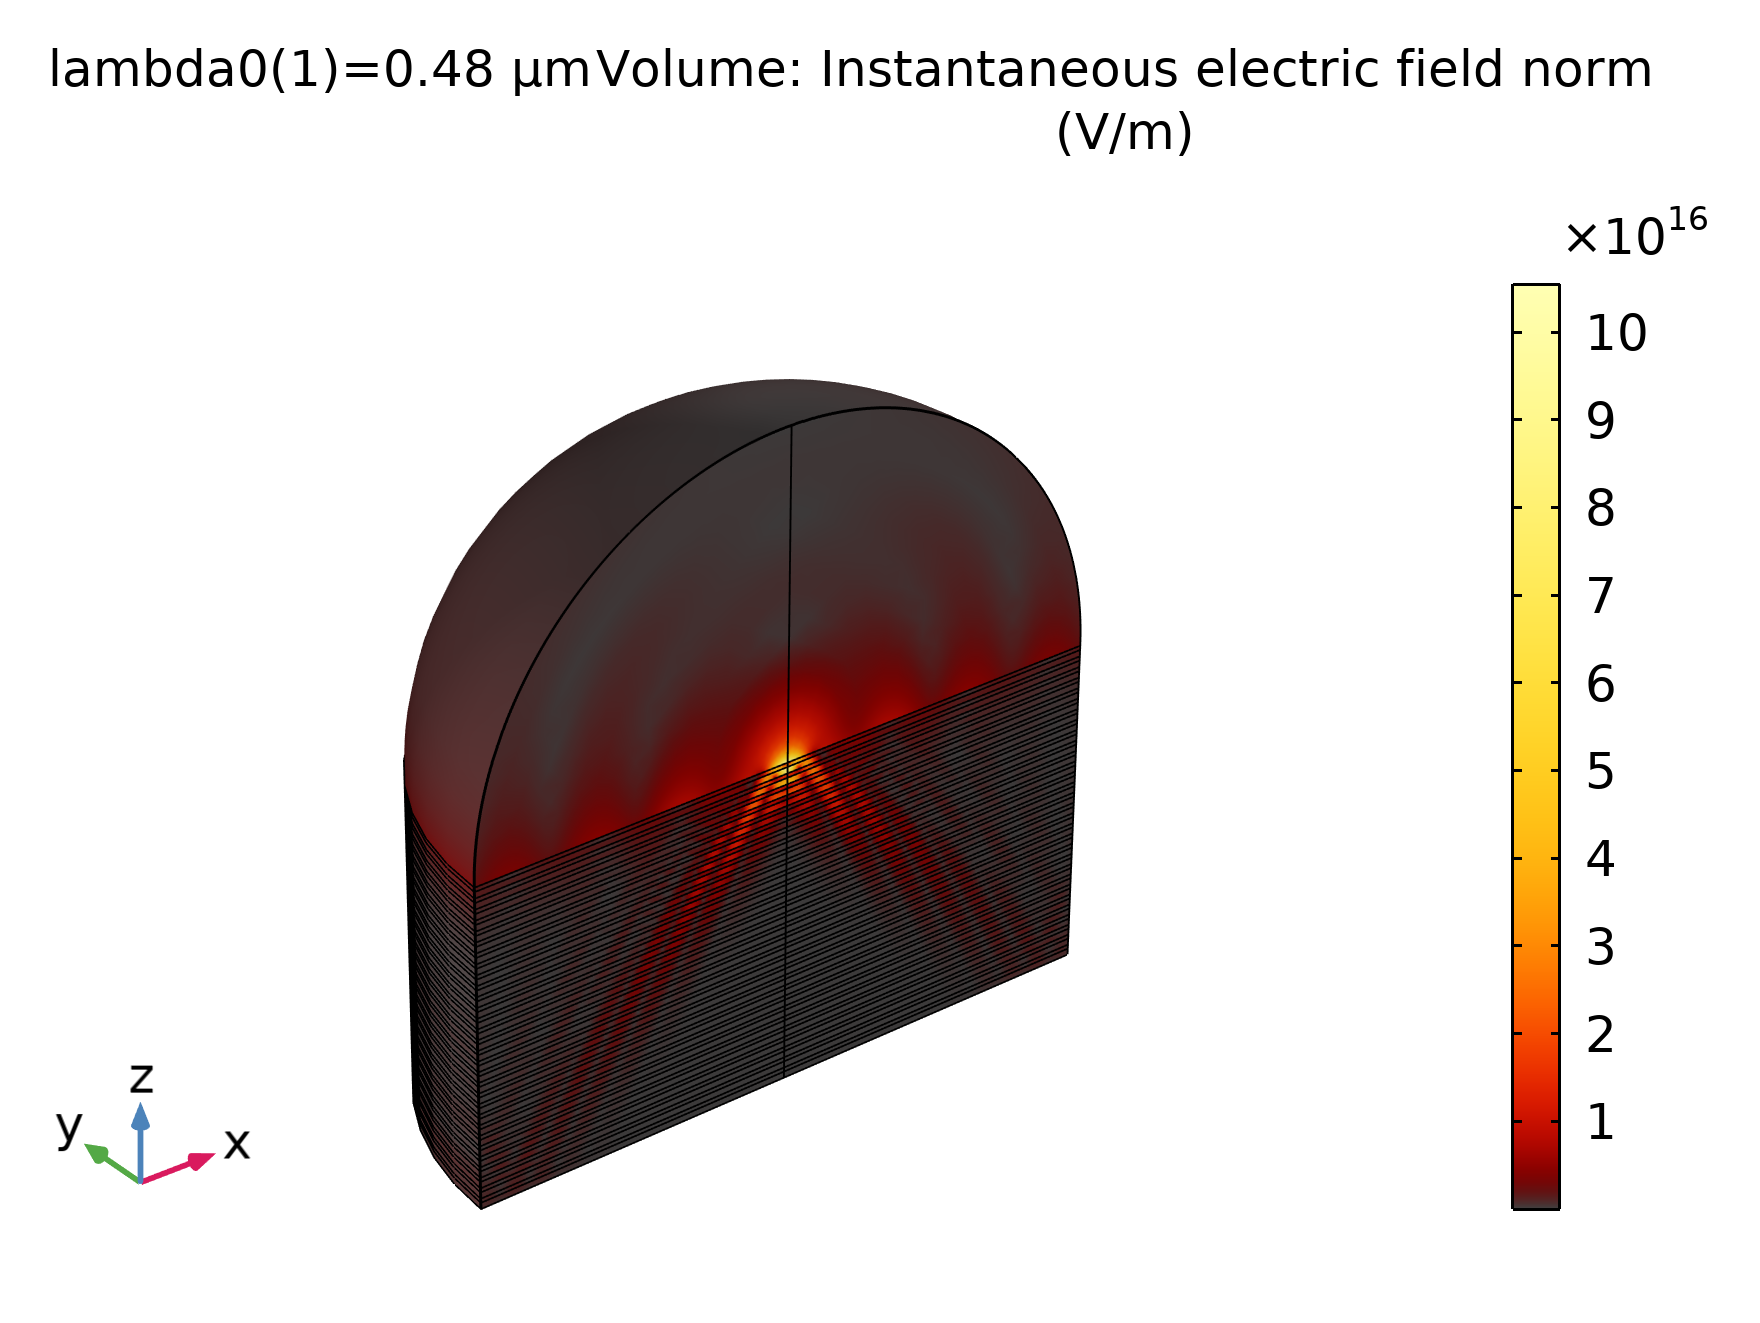 Campo eléctrico instantáneo simulado de la onda hiperbólica excitada en el metamaterial y del polaritón de plasmones superficiales que se propaga en la interfaz metamaterial-aire, Application ID: 12071, por COMSOL [2].